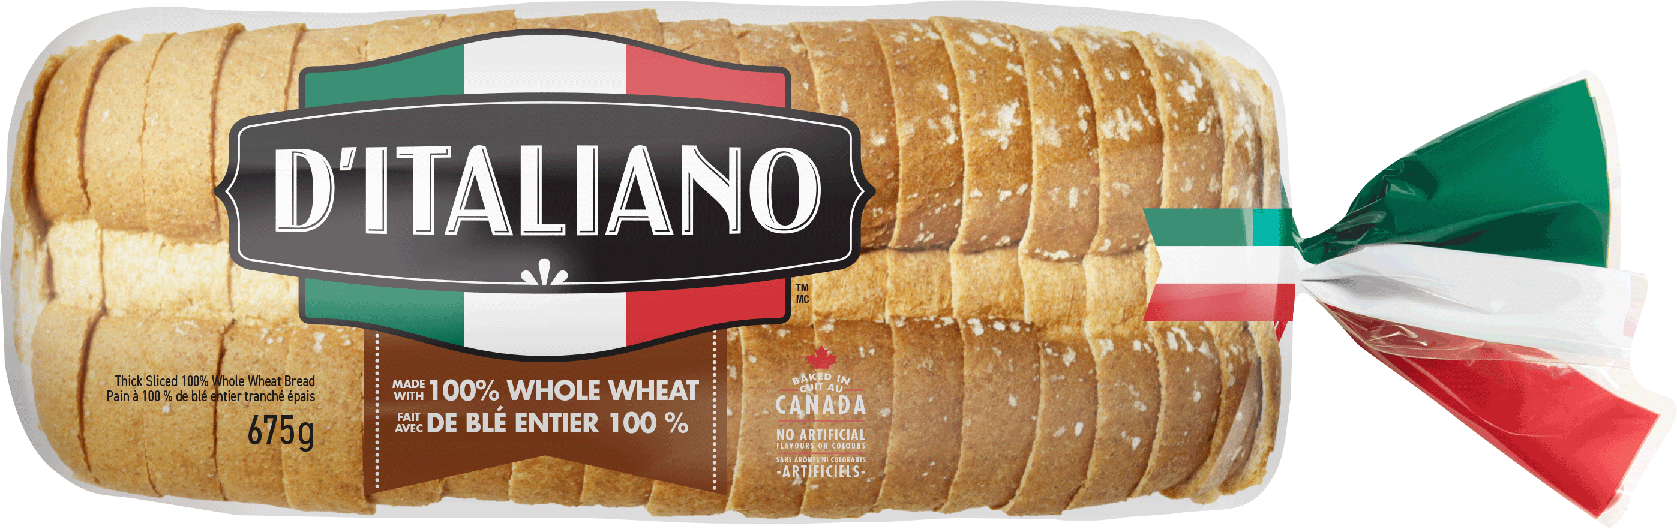 D’Italiano® Thick Slice 100% Whole Wheat Bread